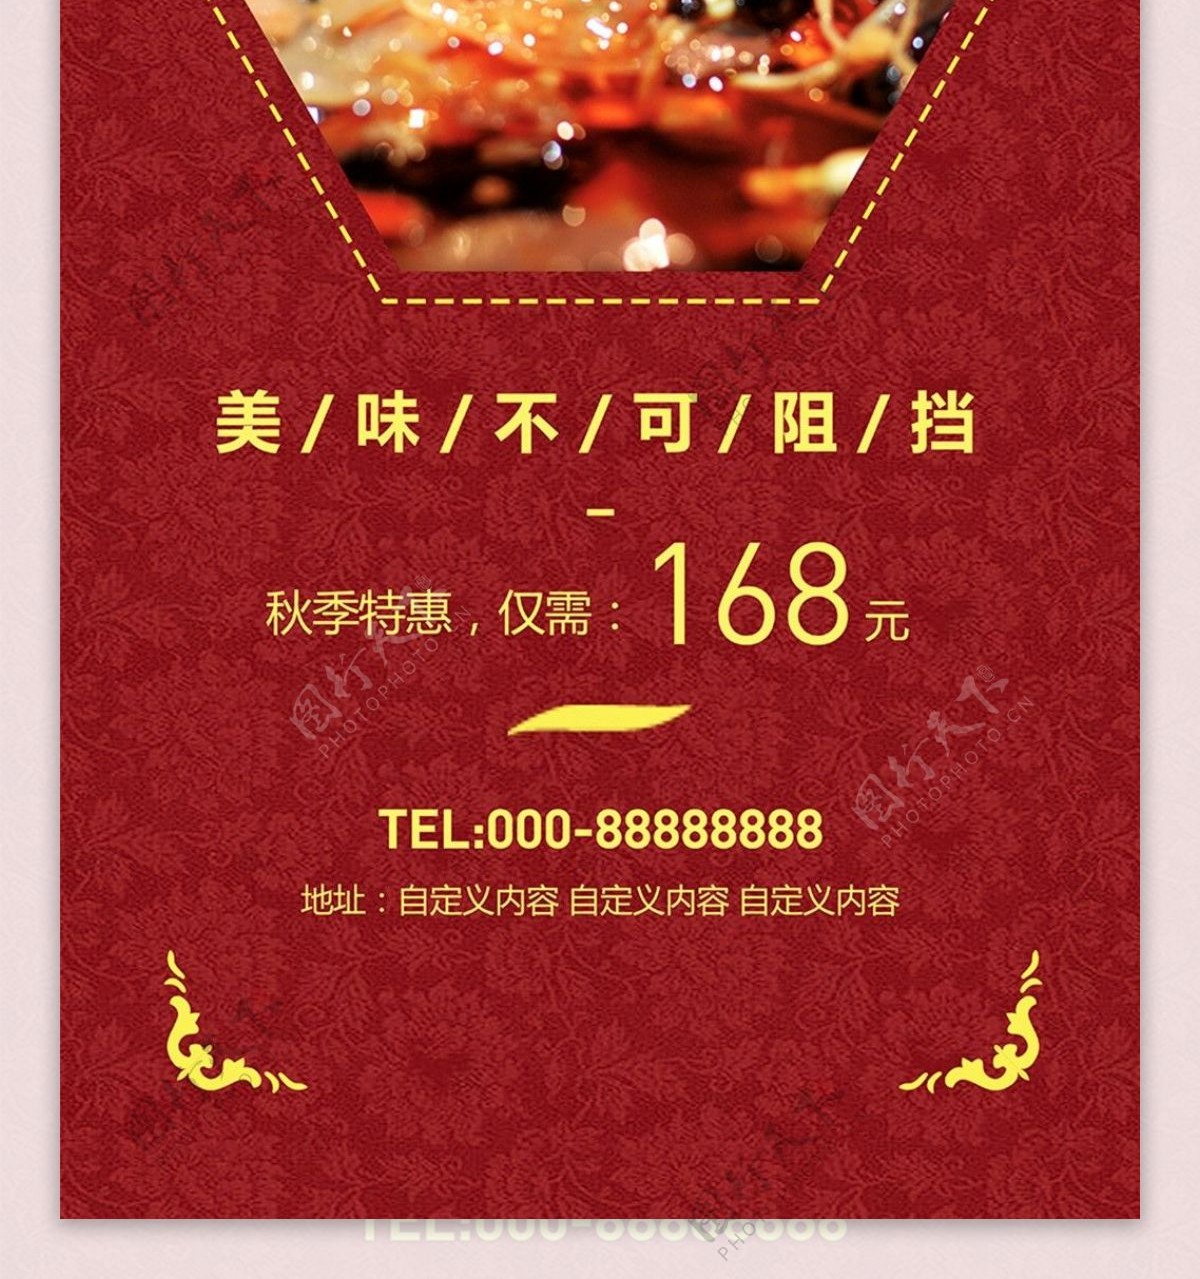 红色中国风中秋美食特惠餐馆节日促销展架